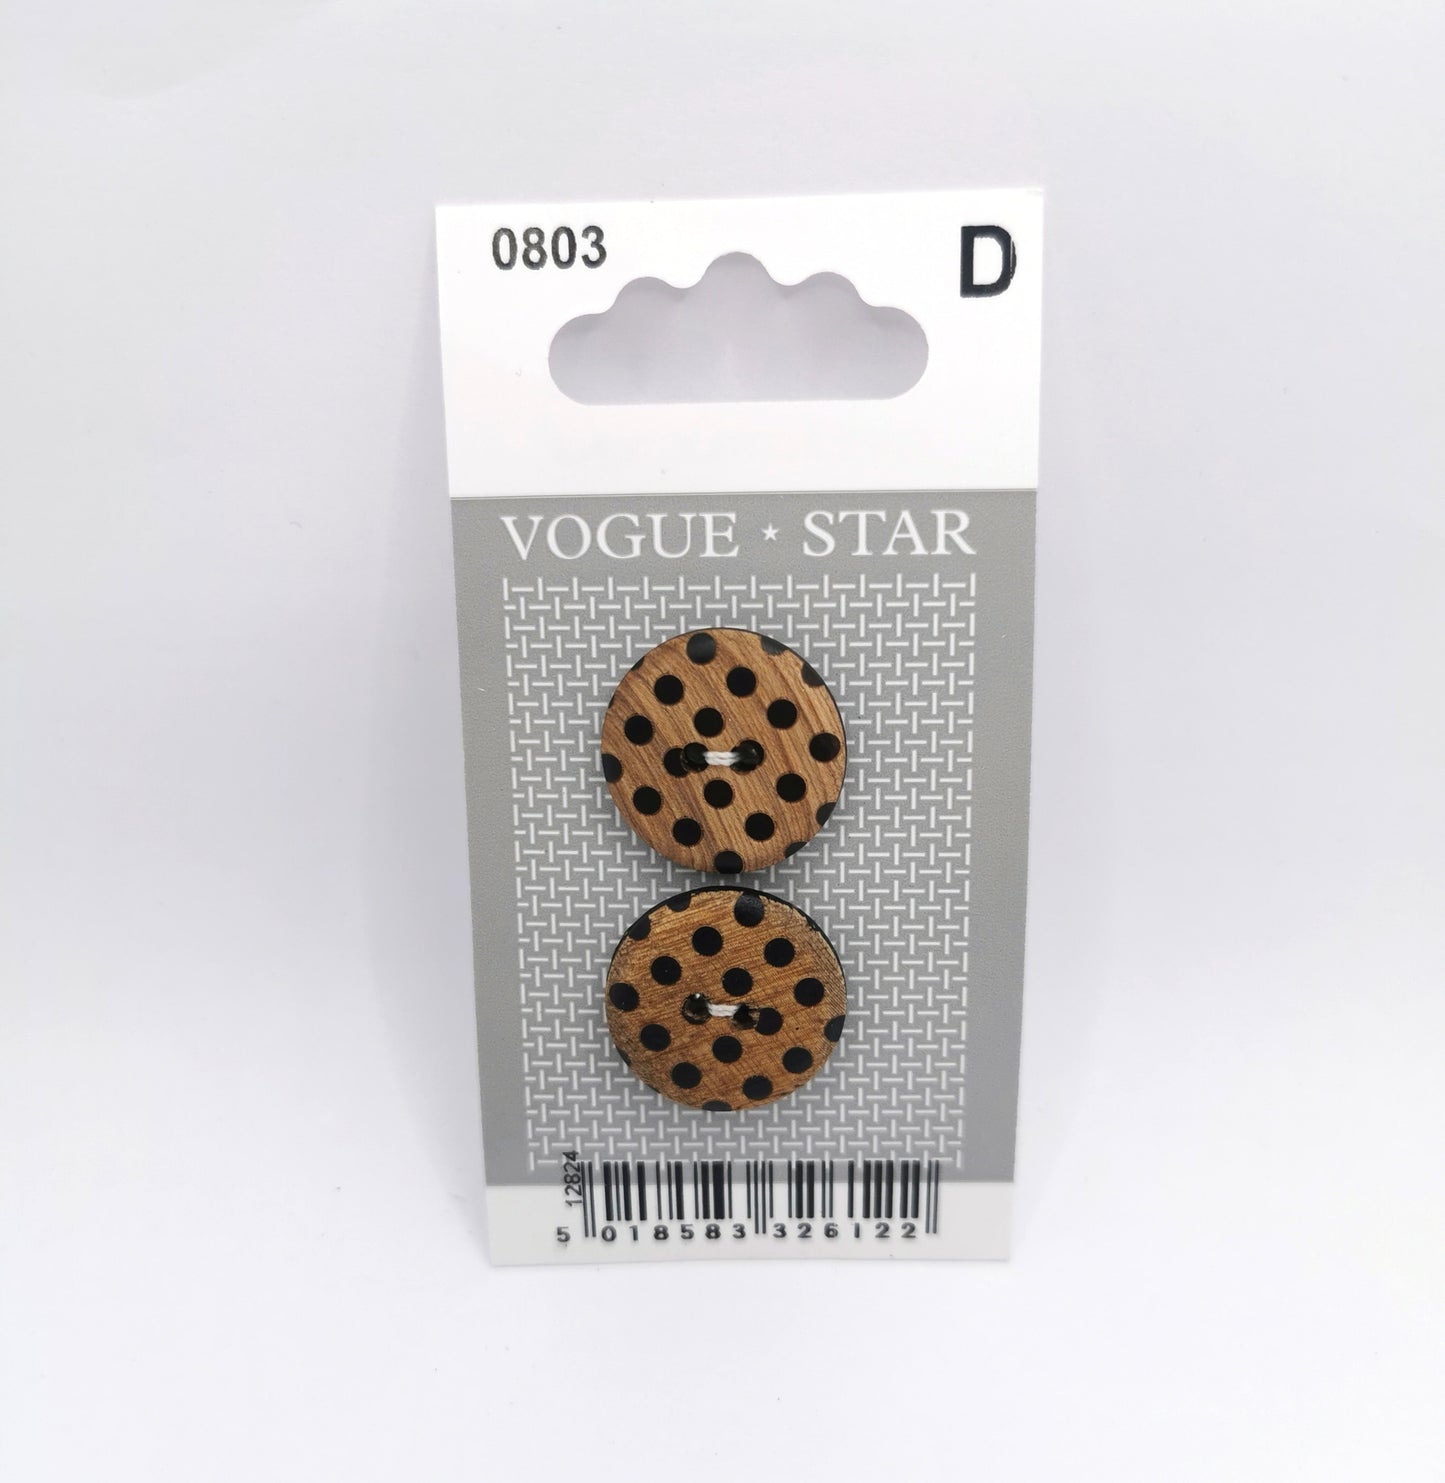 Vogue Star - Wooden Buttons - 20mm - 2pack